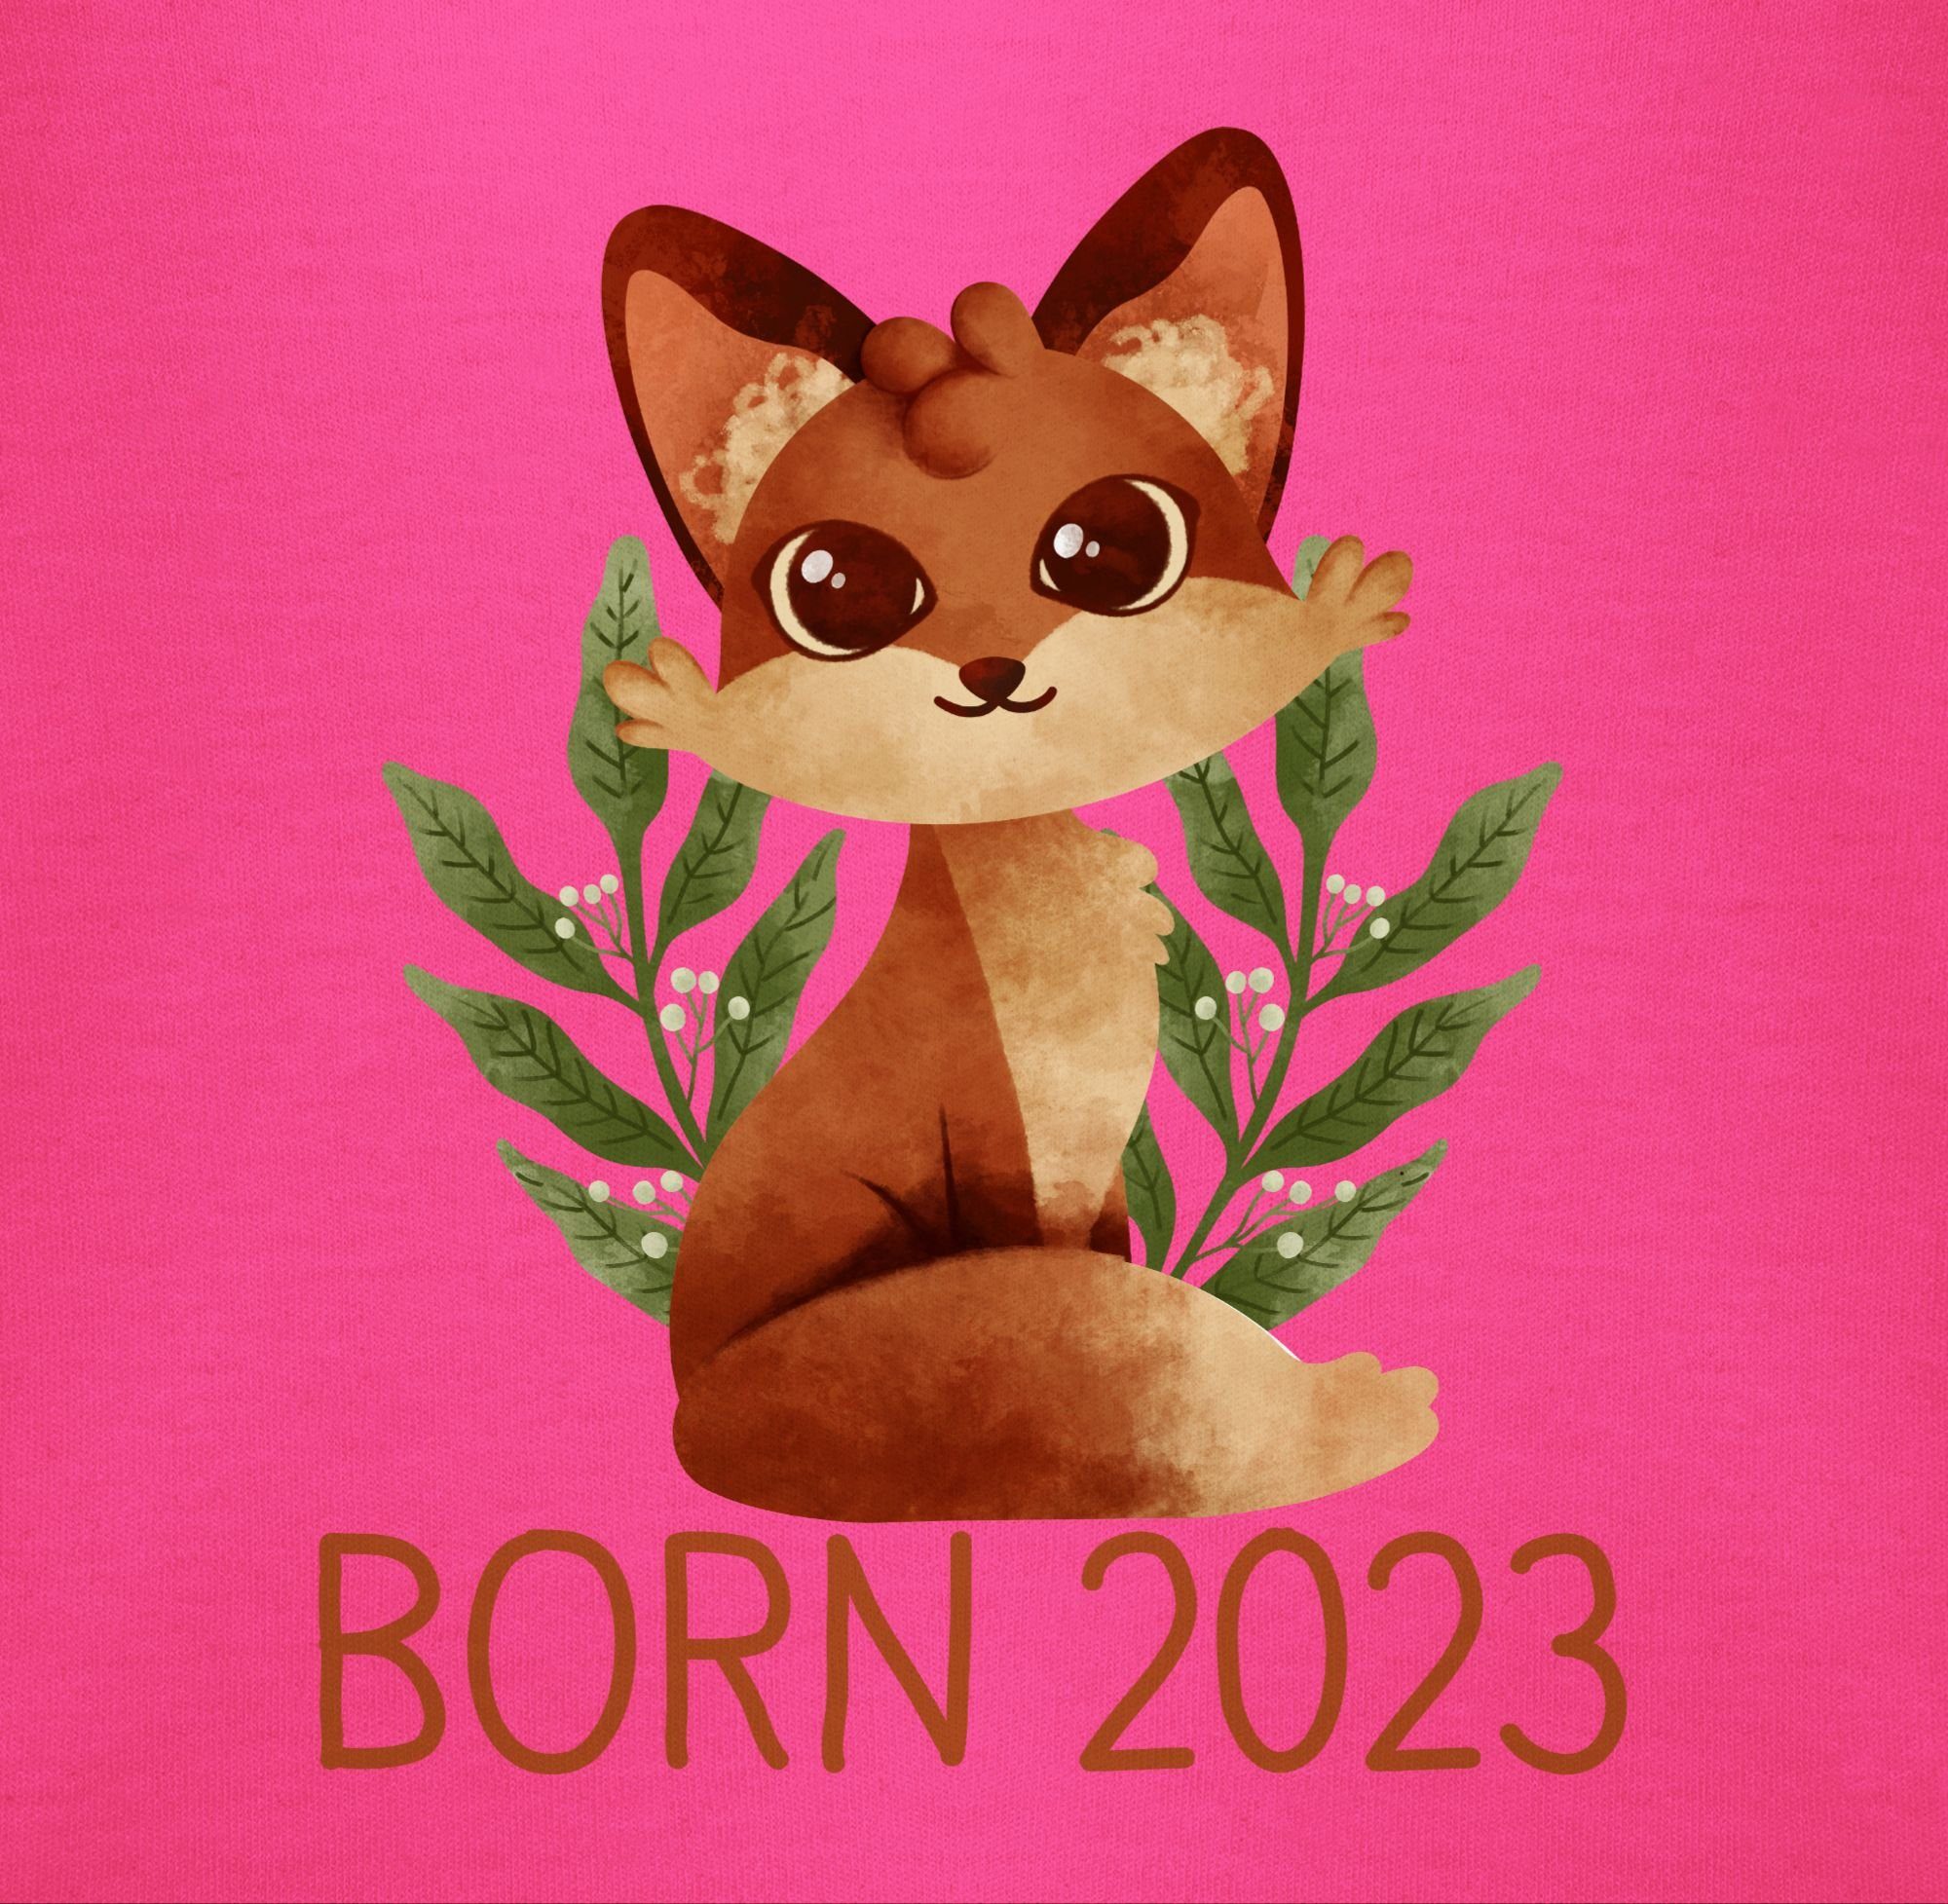 2023 Zur Shirtracer Geburt Fuchs Born Geschenk Shirtbody Geburt